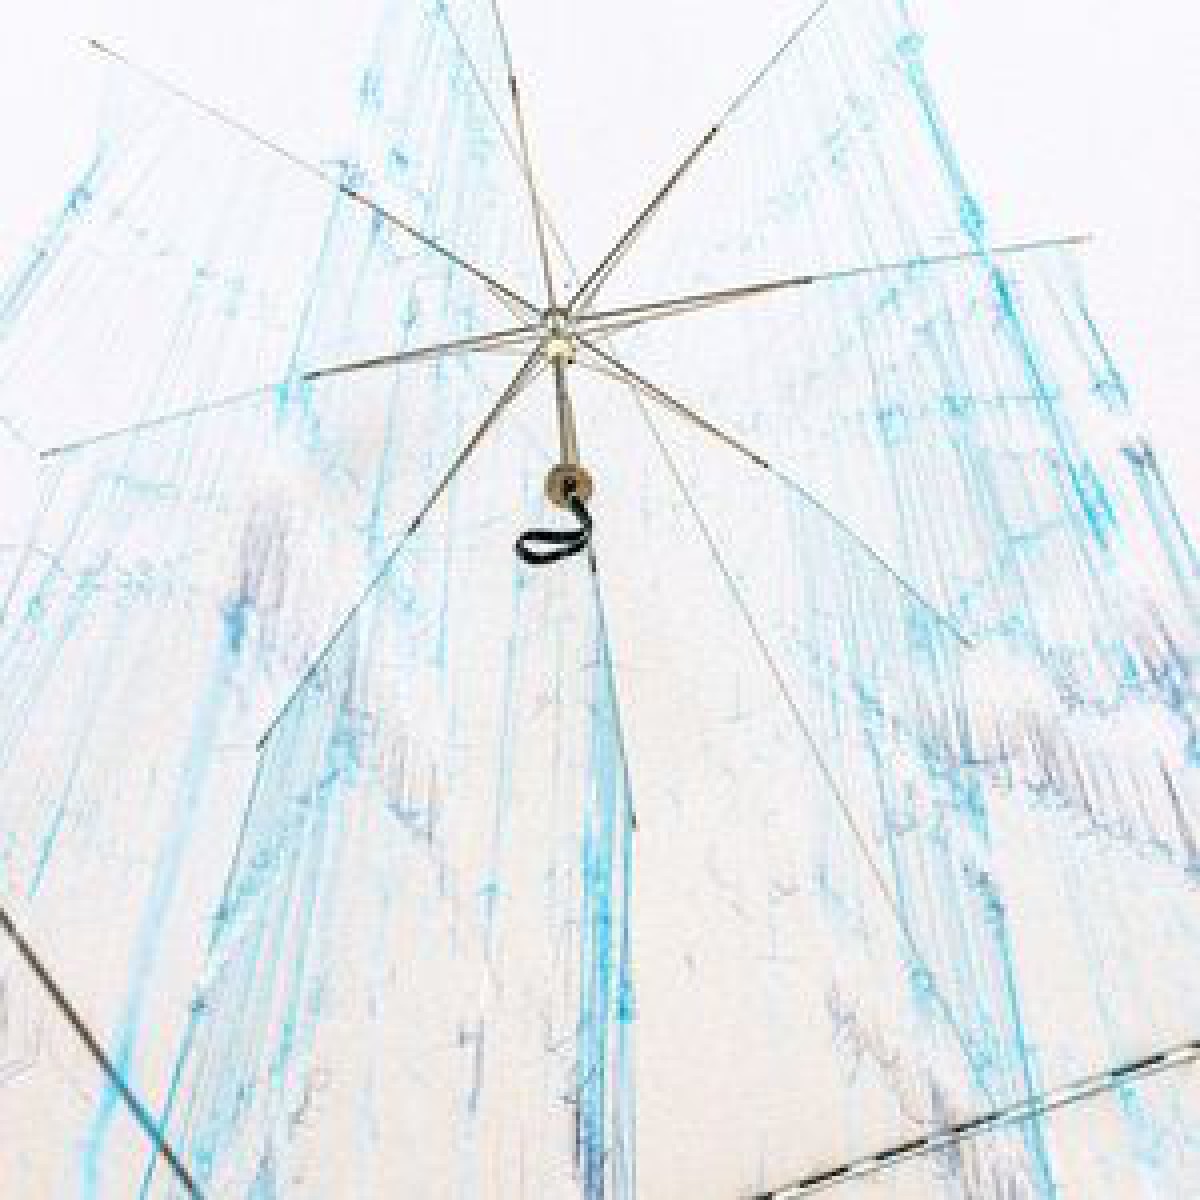 古着や傘を糸になるまで分解、平野薫の個展がポーラ美術館で開催